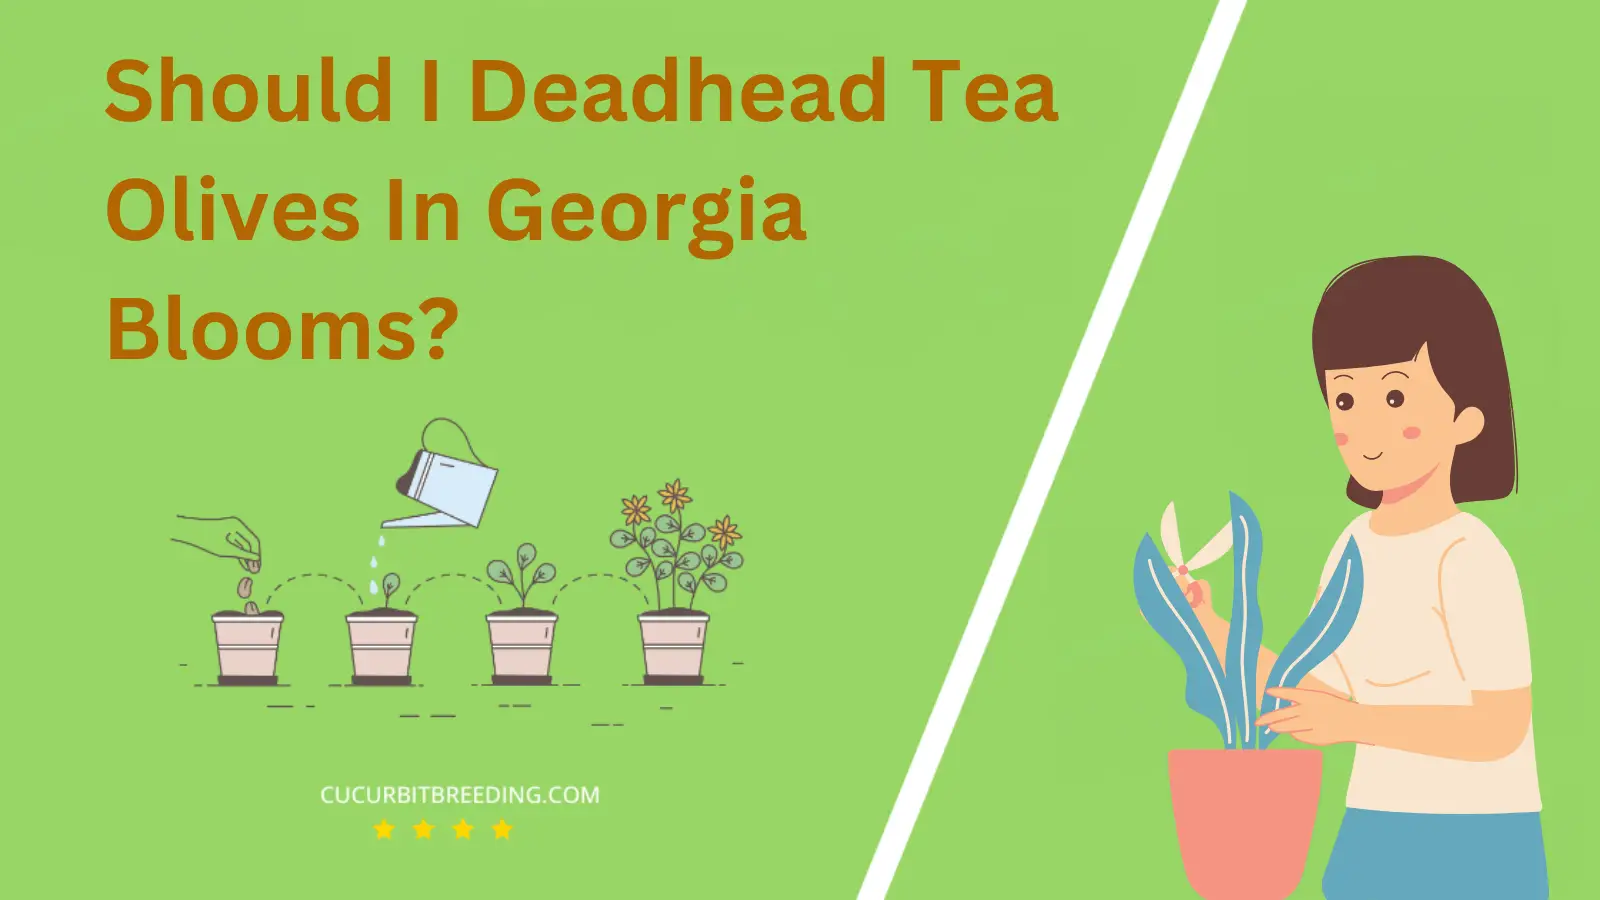 Should I Deadhead Tea Olives In Georgia Blooms?